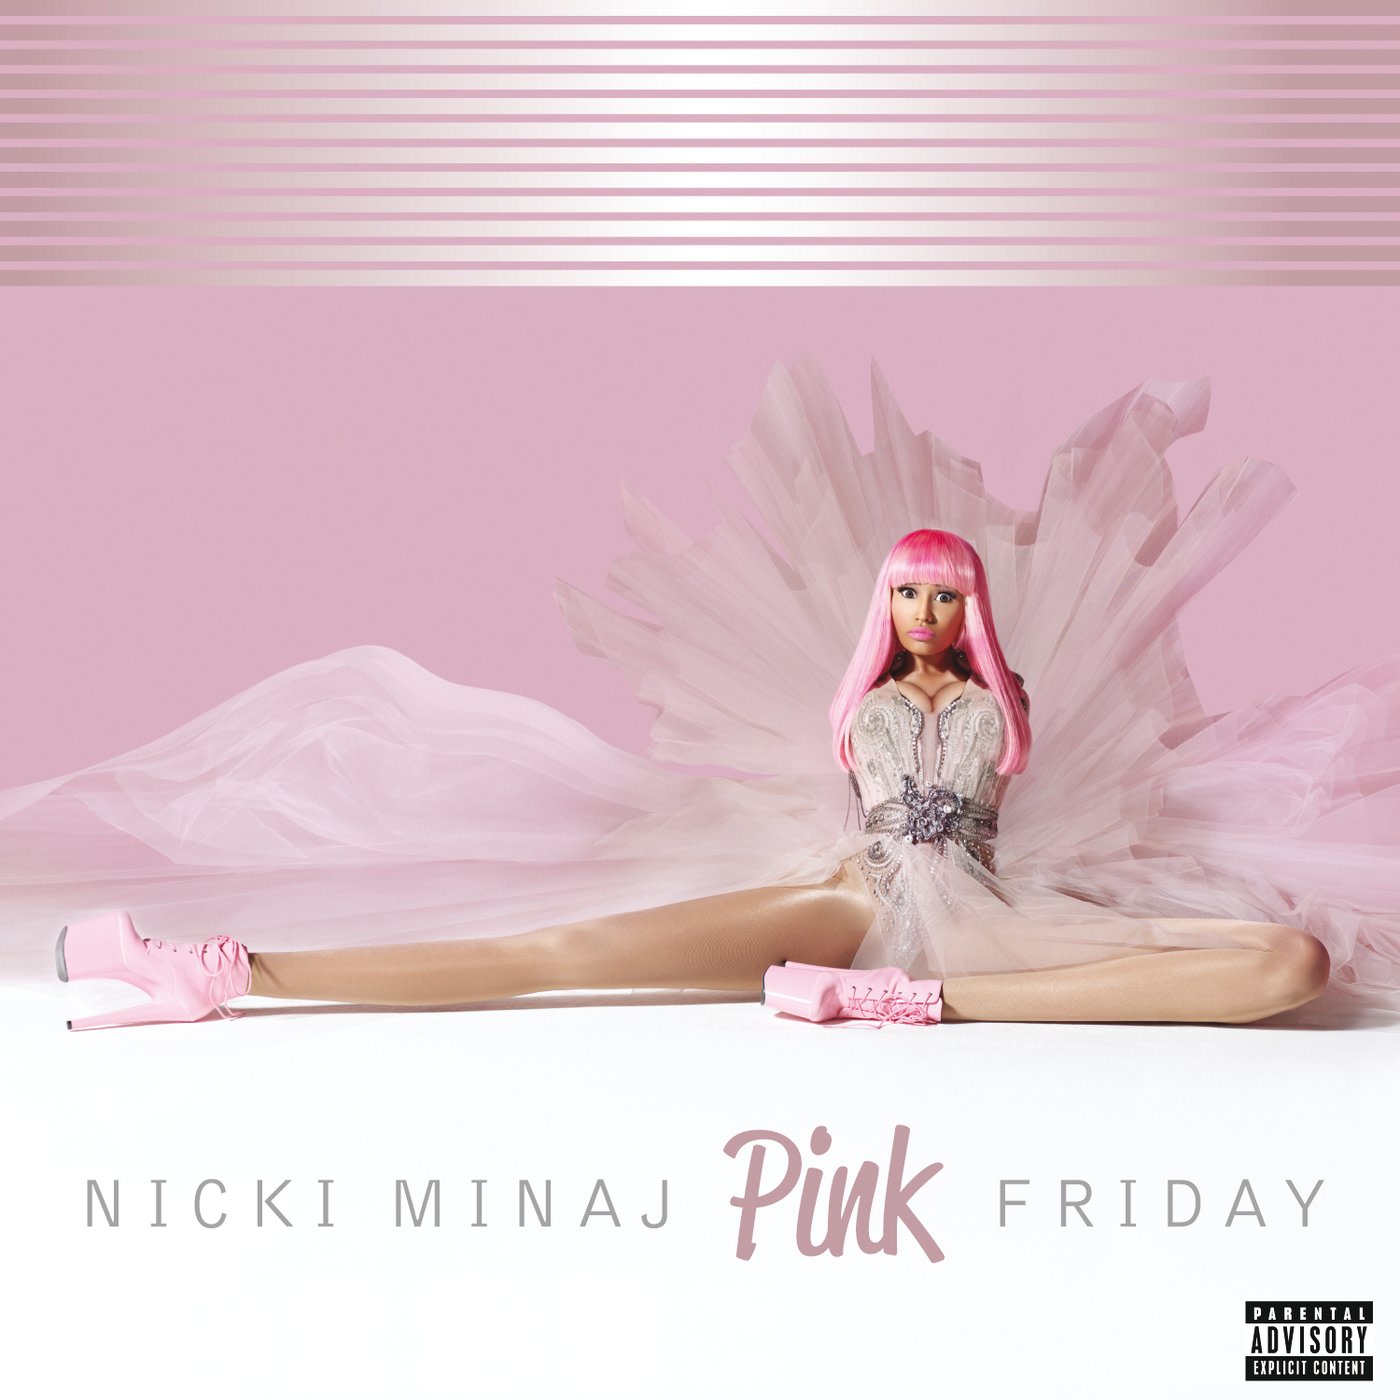 Decade of Dominance Nicki Minaj's 'Pink Friday' Debut Turns 10 Two